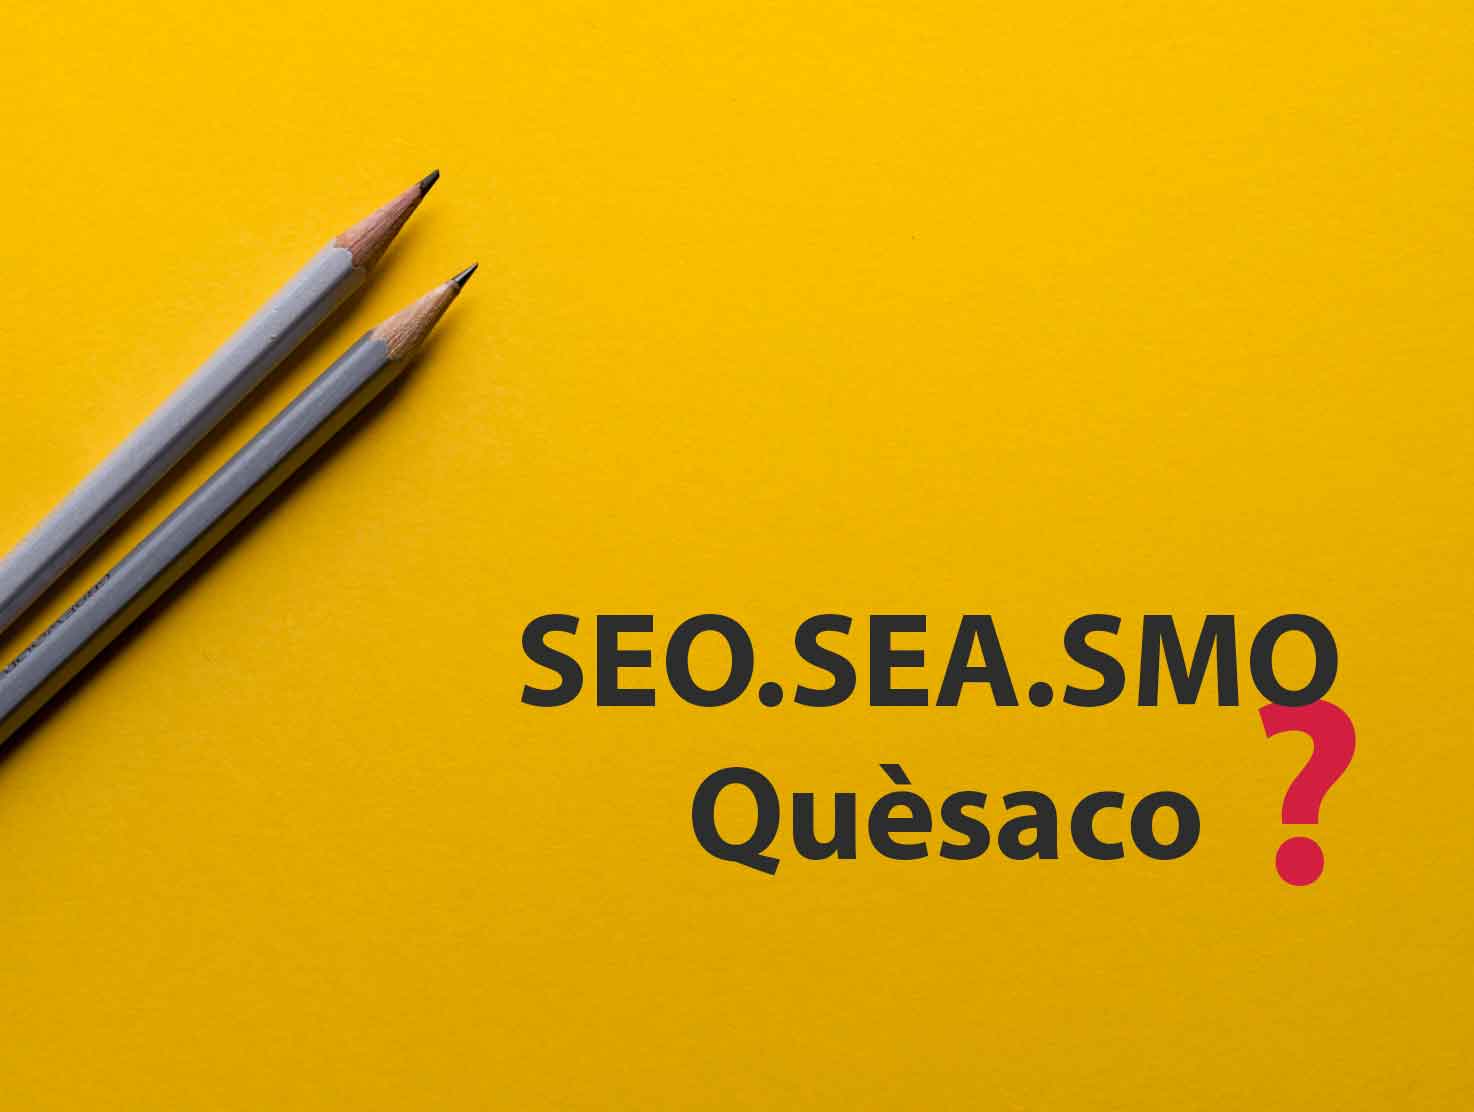 SEO_SEA_SMO_Quesaco